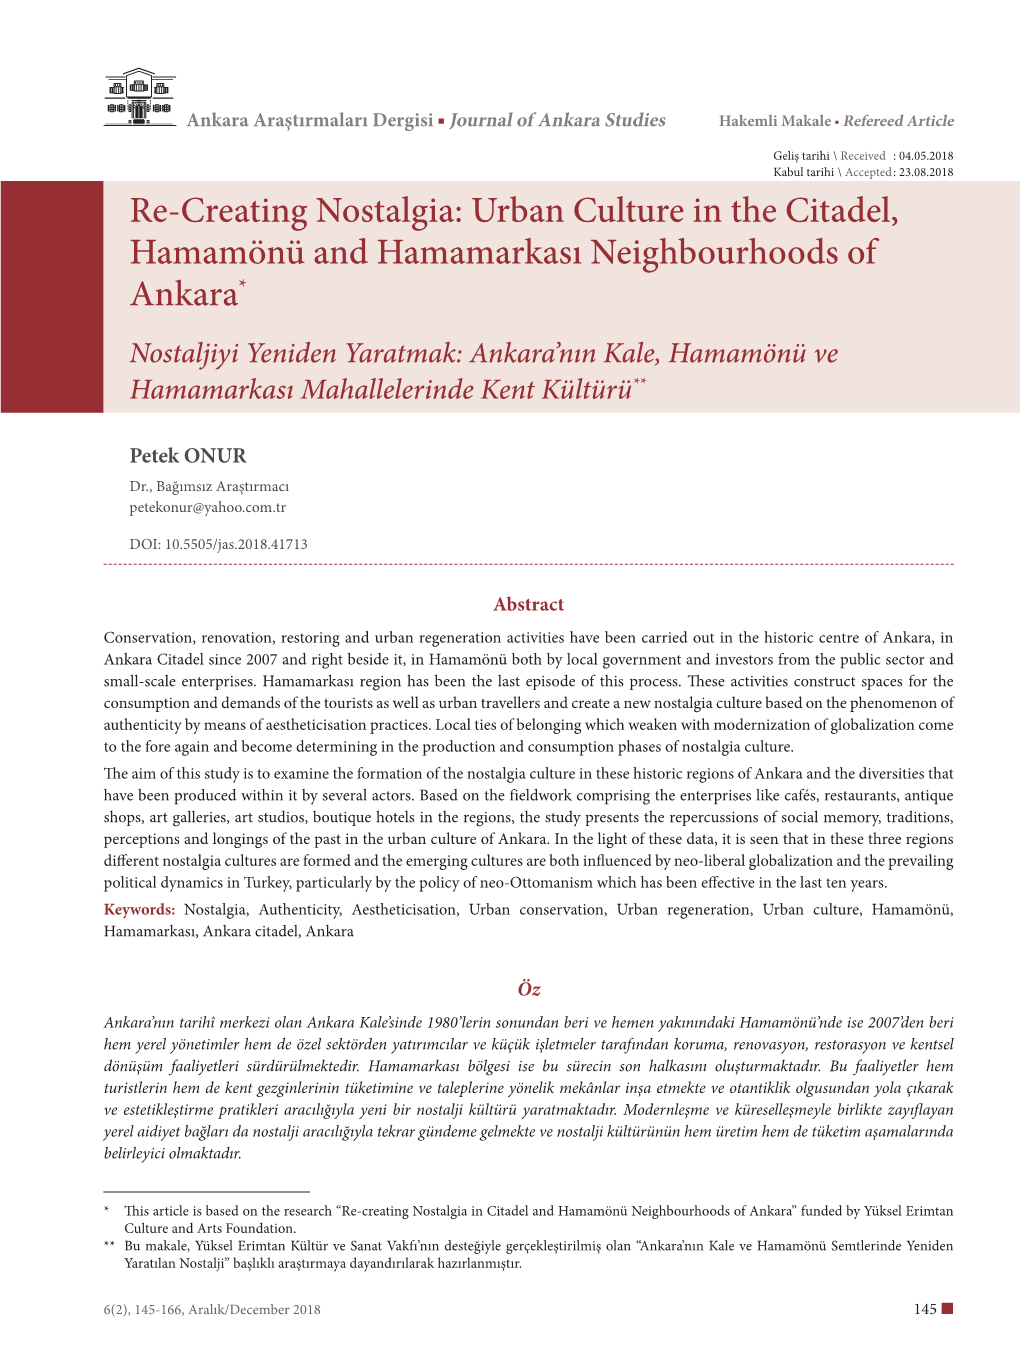 Re-Creating Nostalgia: Urban Culture in the Citadel